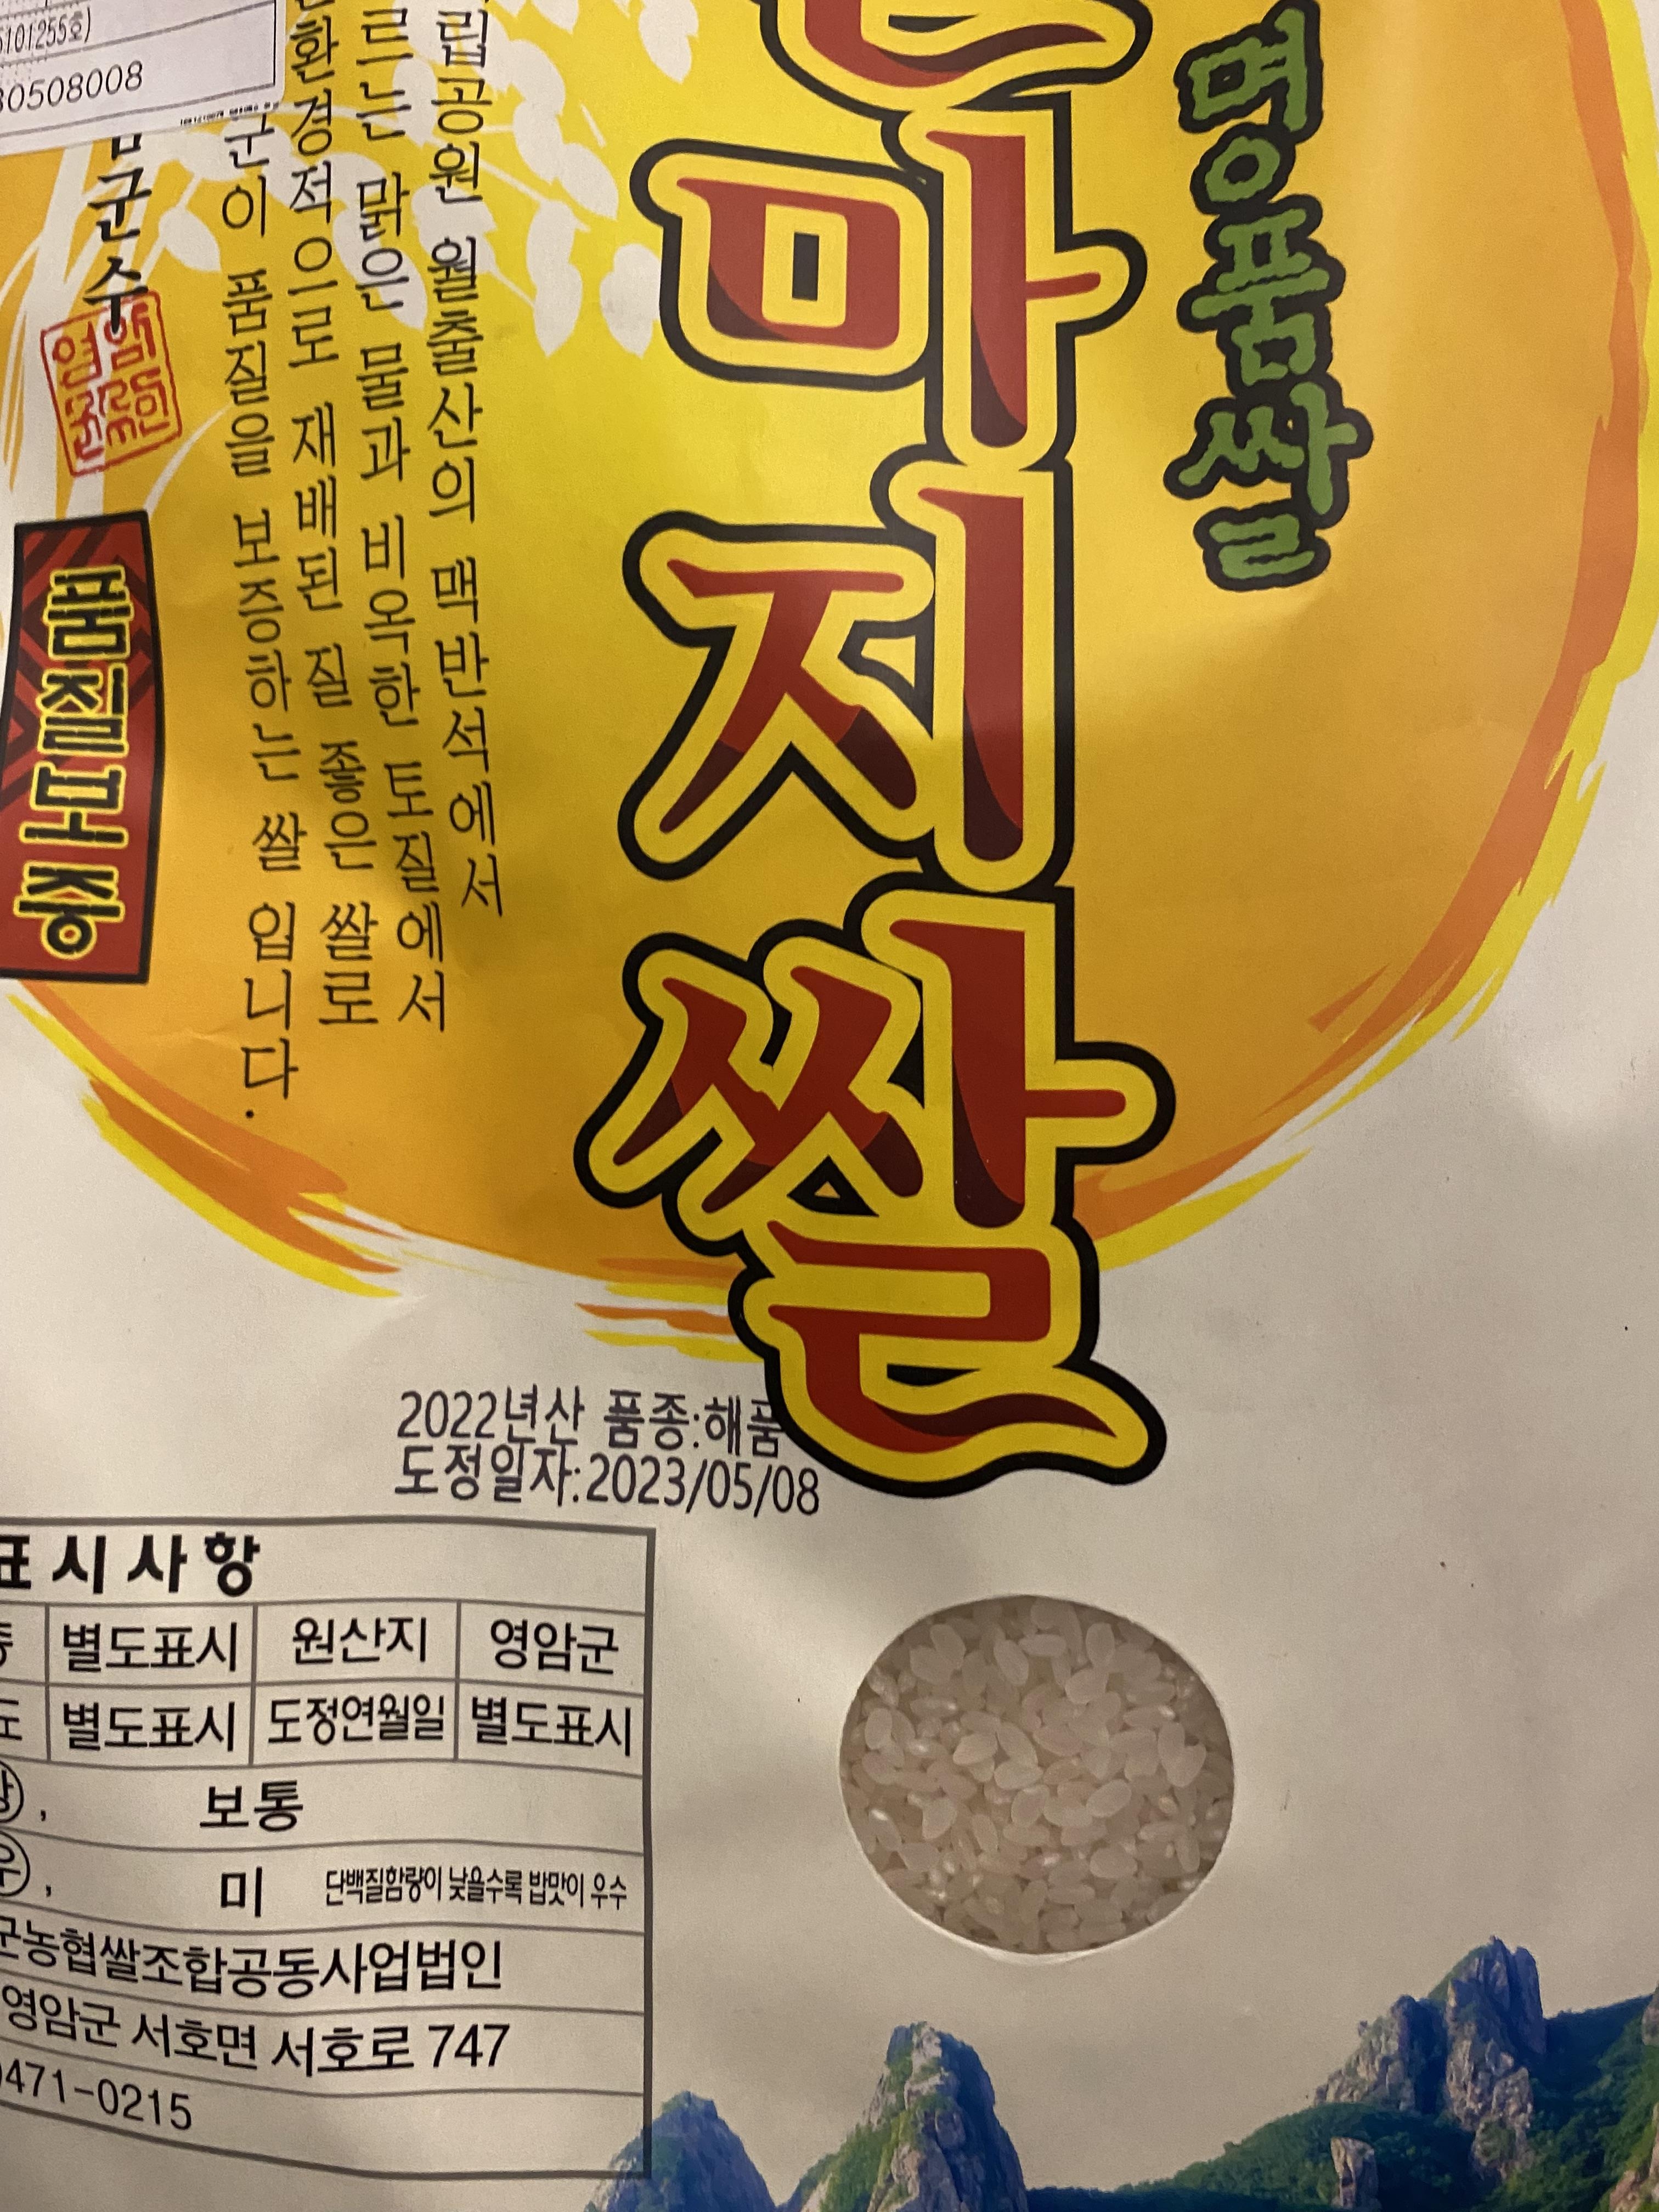 (영암군농협쌀조합) GAP인증시설 23년산 유기농 달마지쌀 10kg